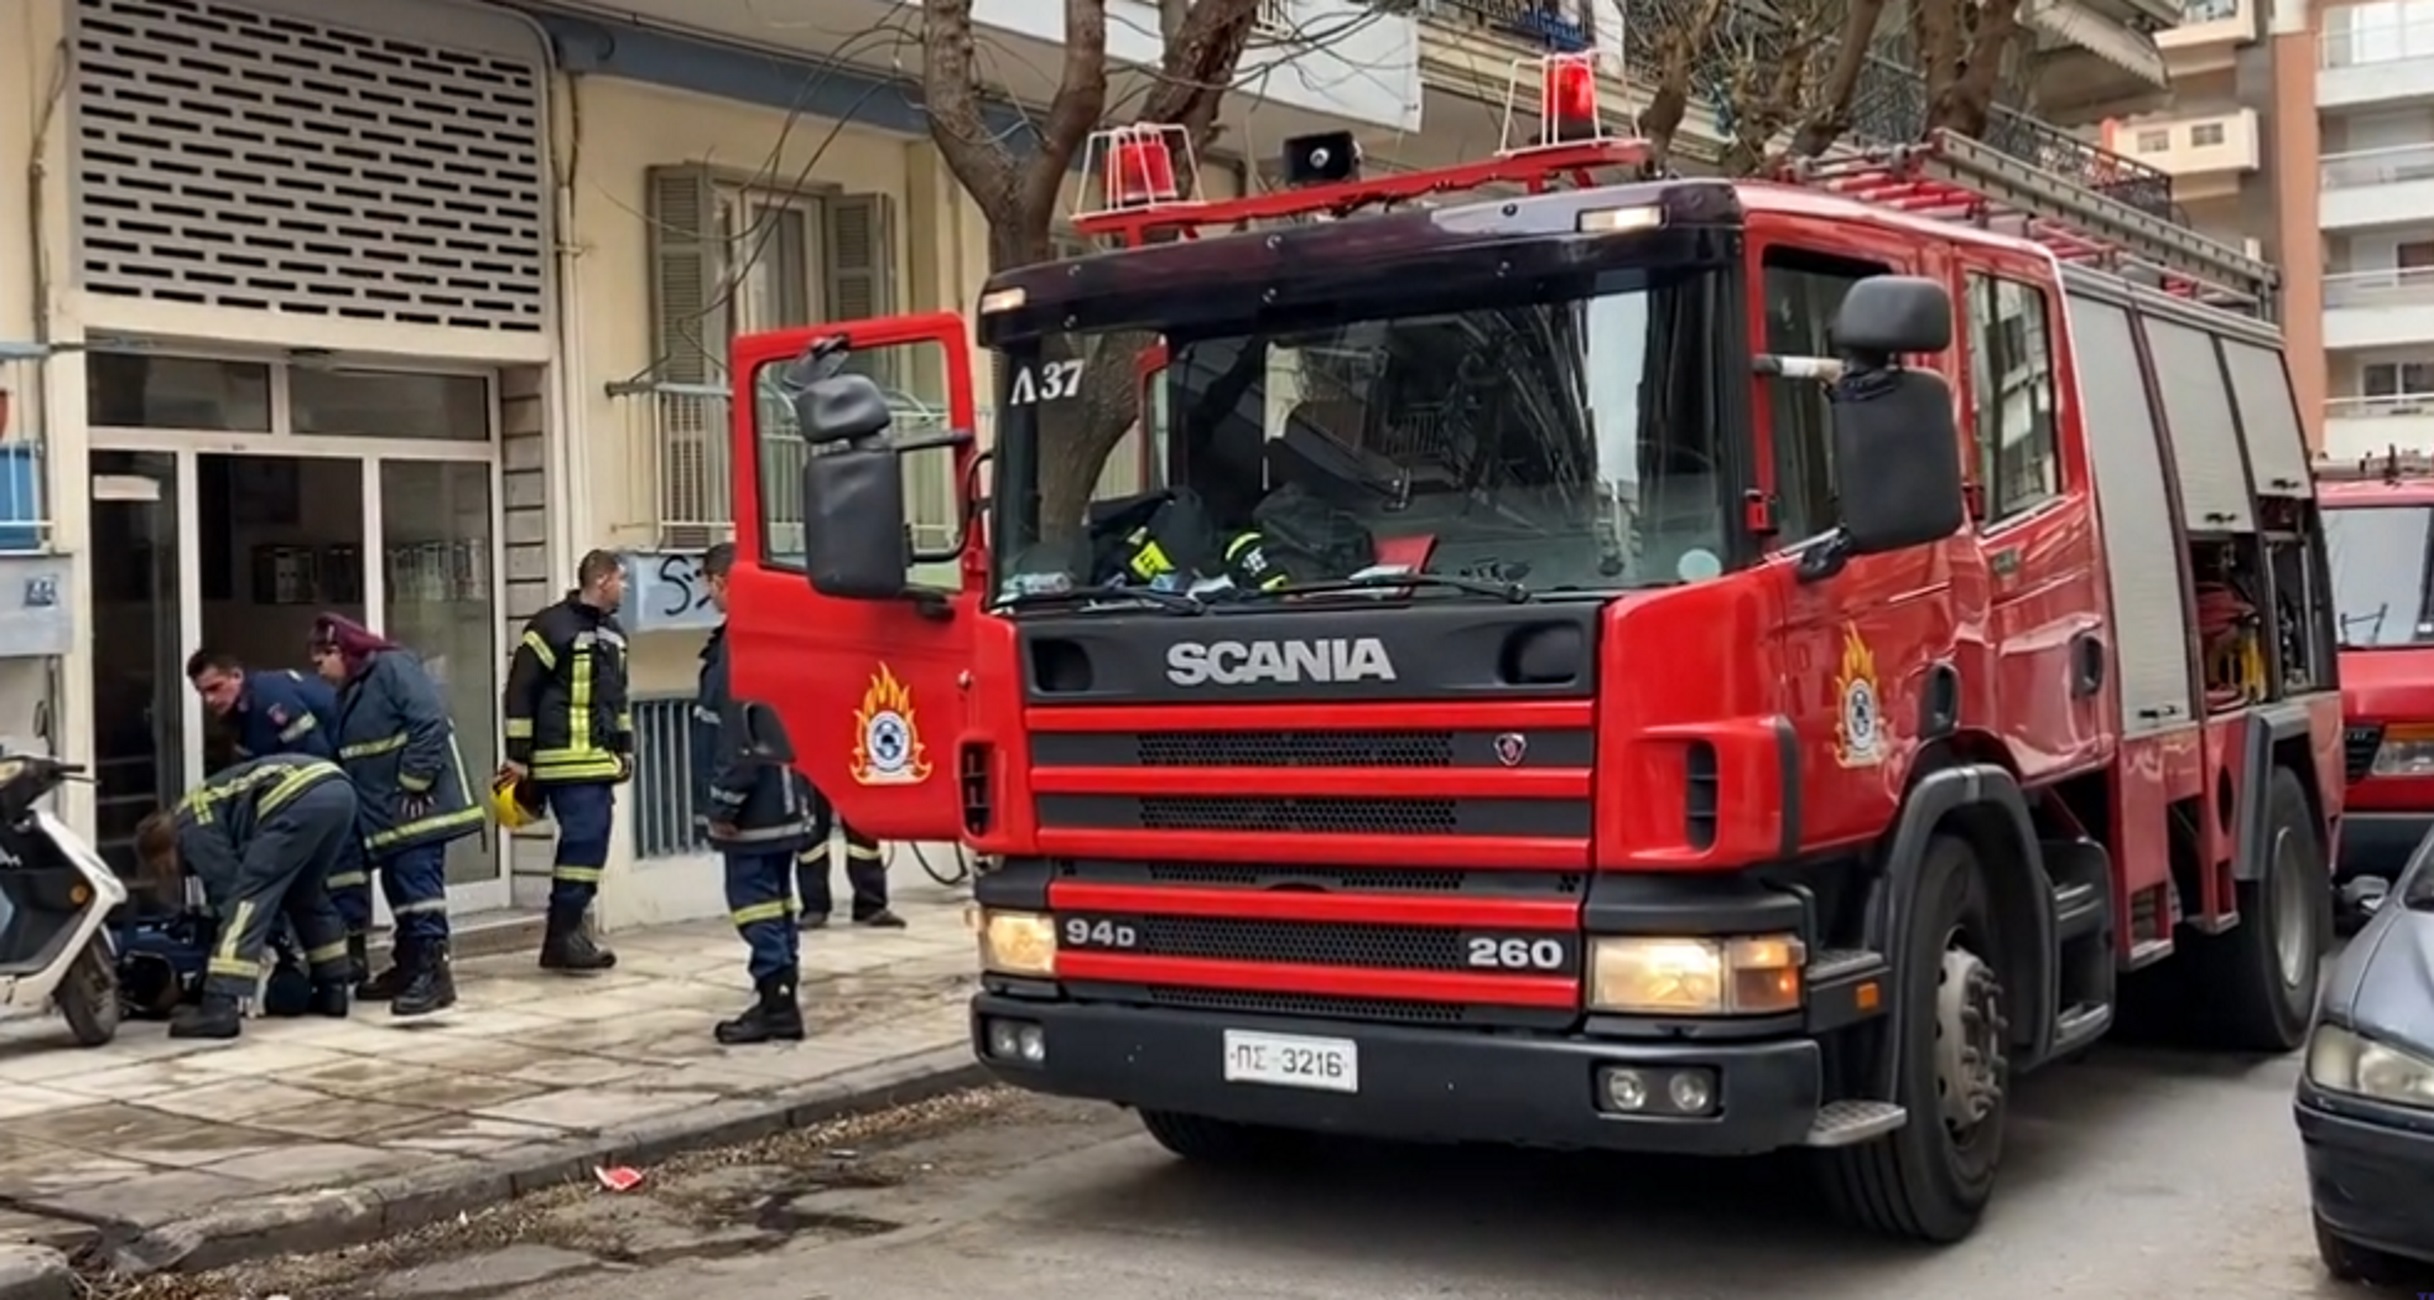 Θεσσαλονίκη: Ανασύρθηκε χωρίς τις αισθήσεις του μετά από φωτιά σε διαμέρισμα πολυκατοικίας